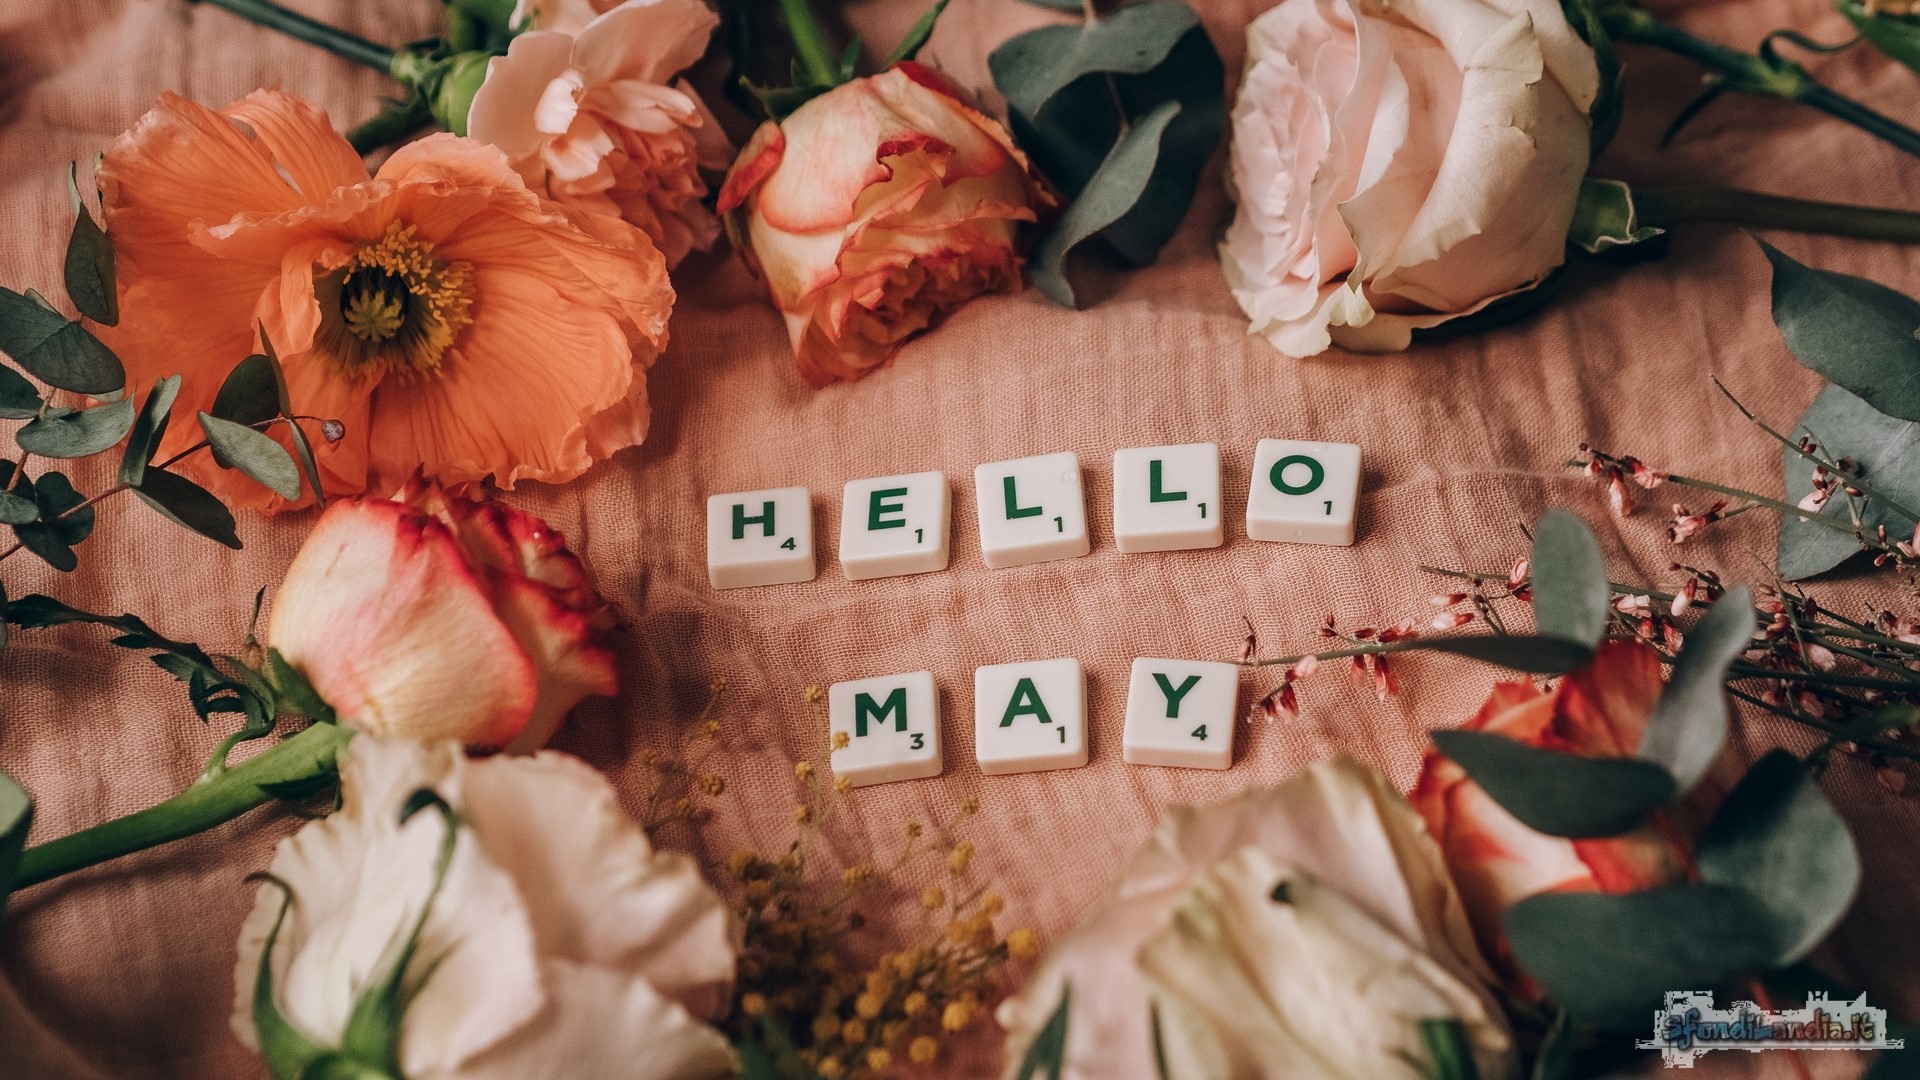 Hello May